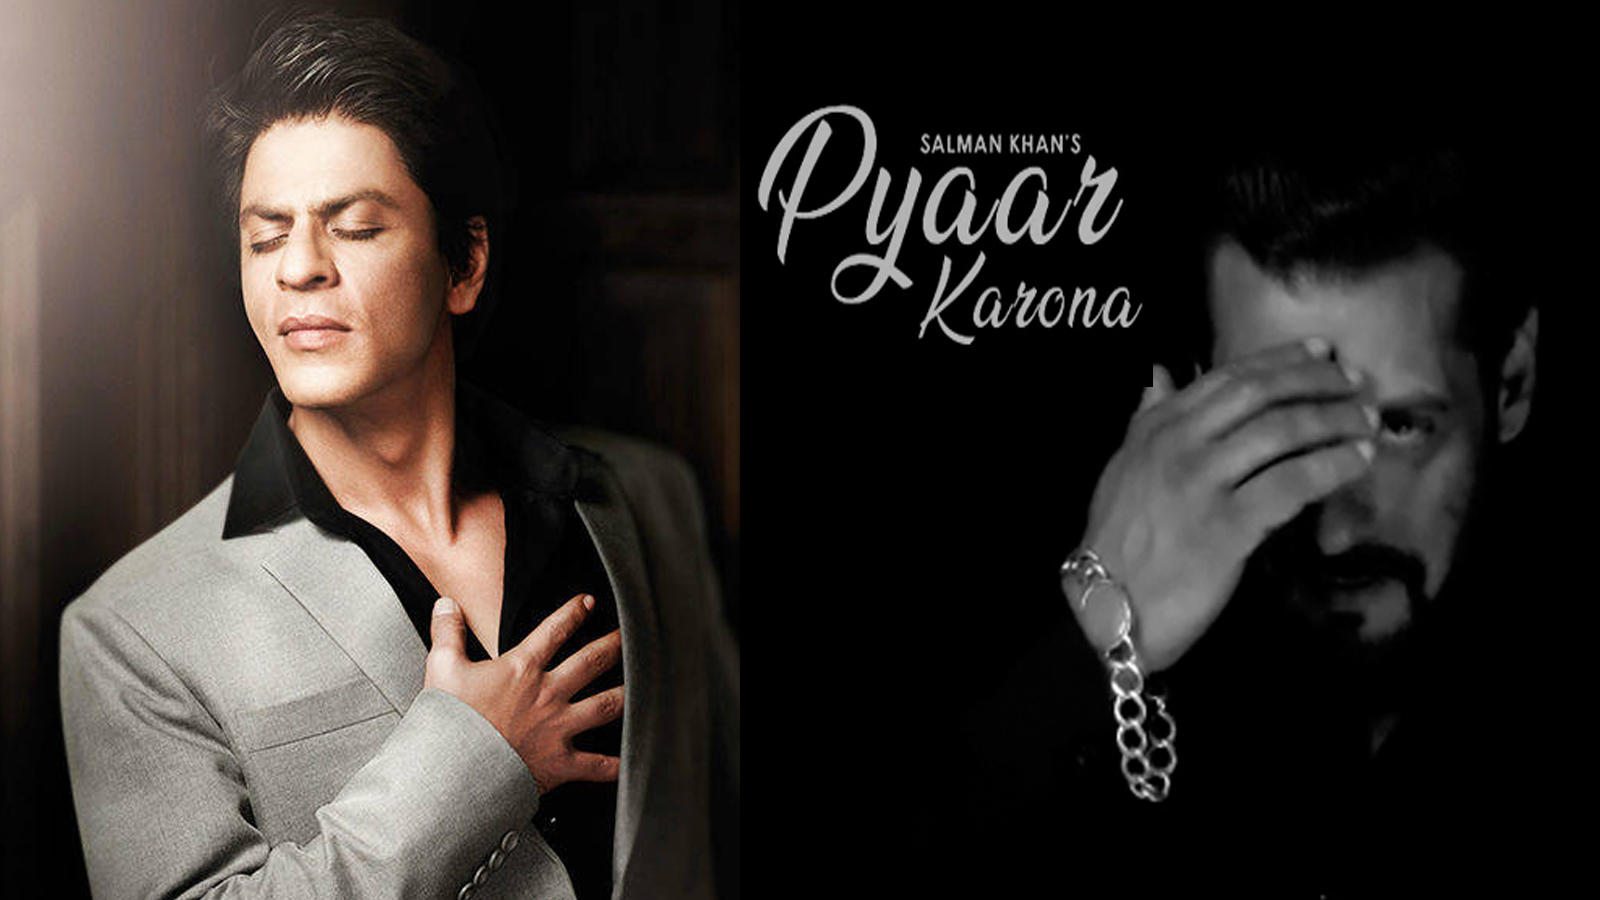 Shah Rukh Khan praises Salman Khan's coronavirus-themed song 'Pyaar  Karona', says 'Bhai kamaal ka Single aur Singer hai' | Hindi Movie News -  Bollywood - Times of India